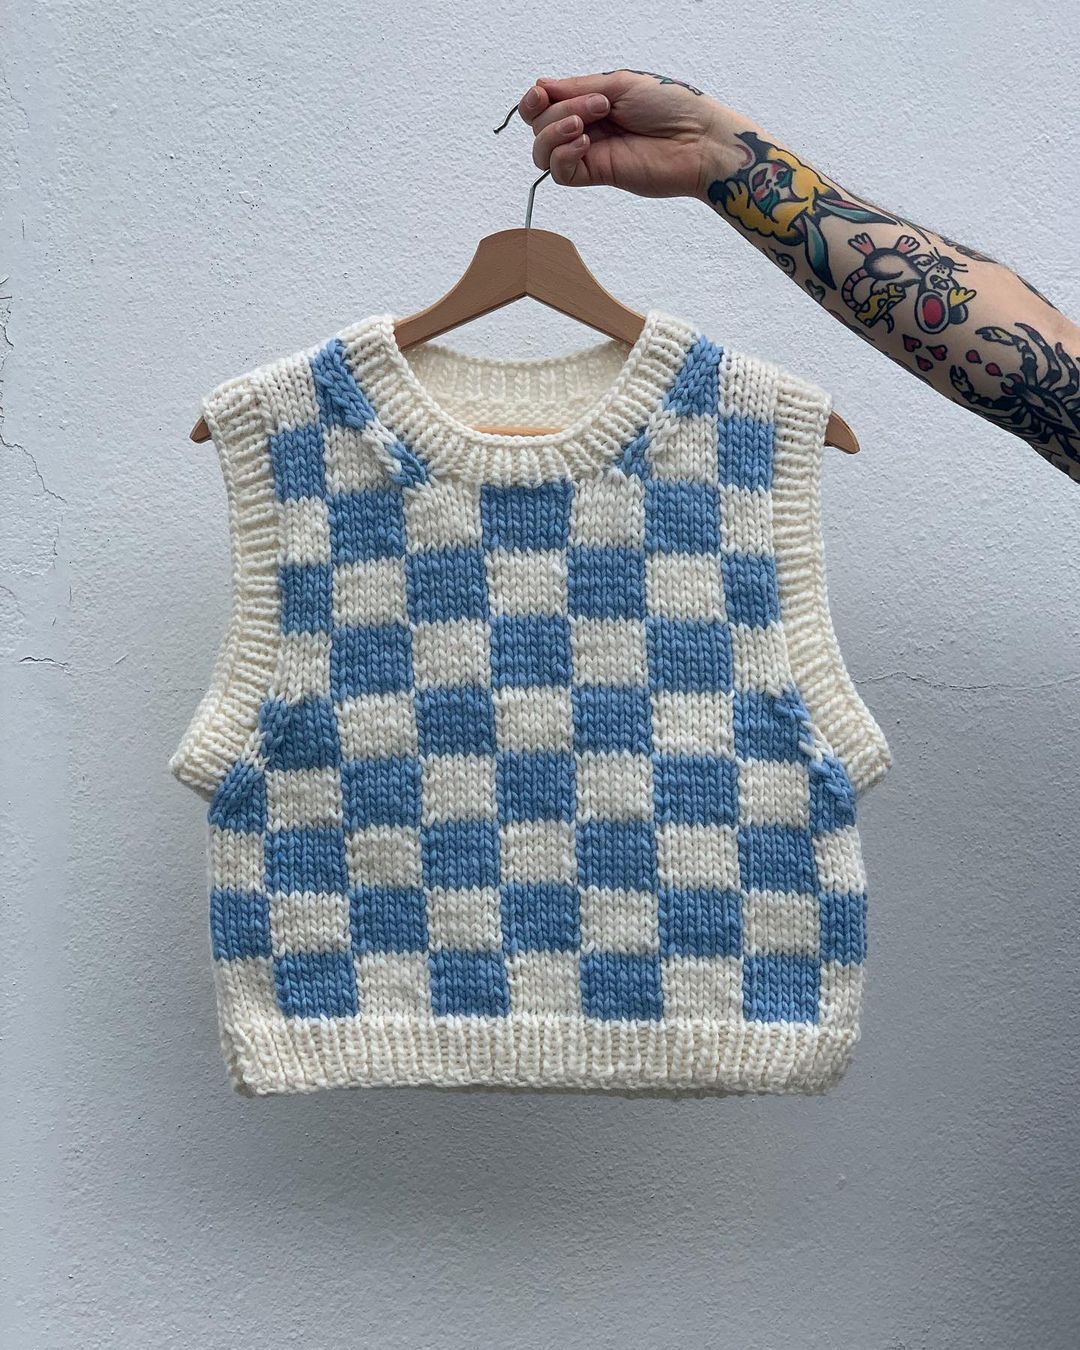 How to Make a Crochet Vest: Beginner’s
Guide